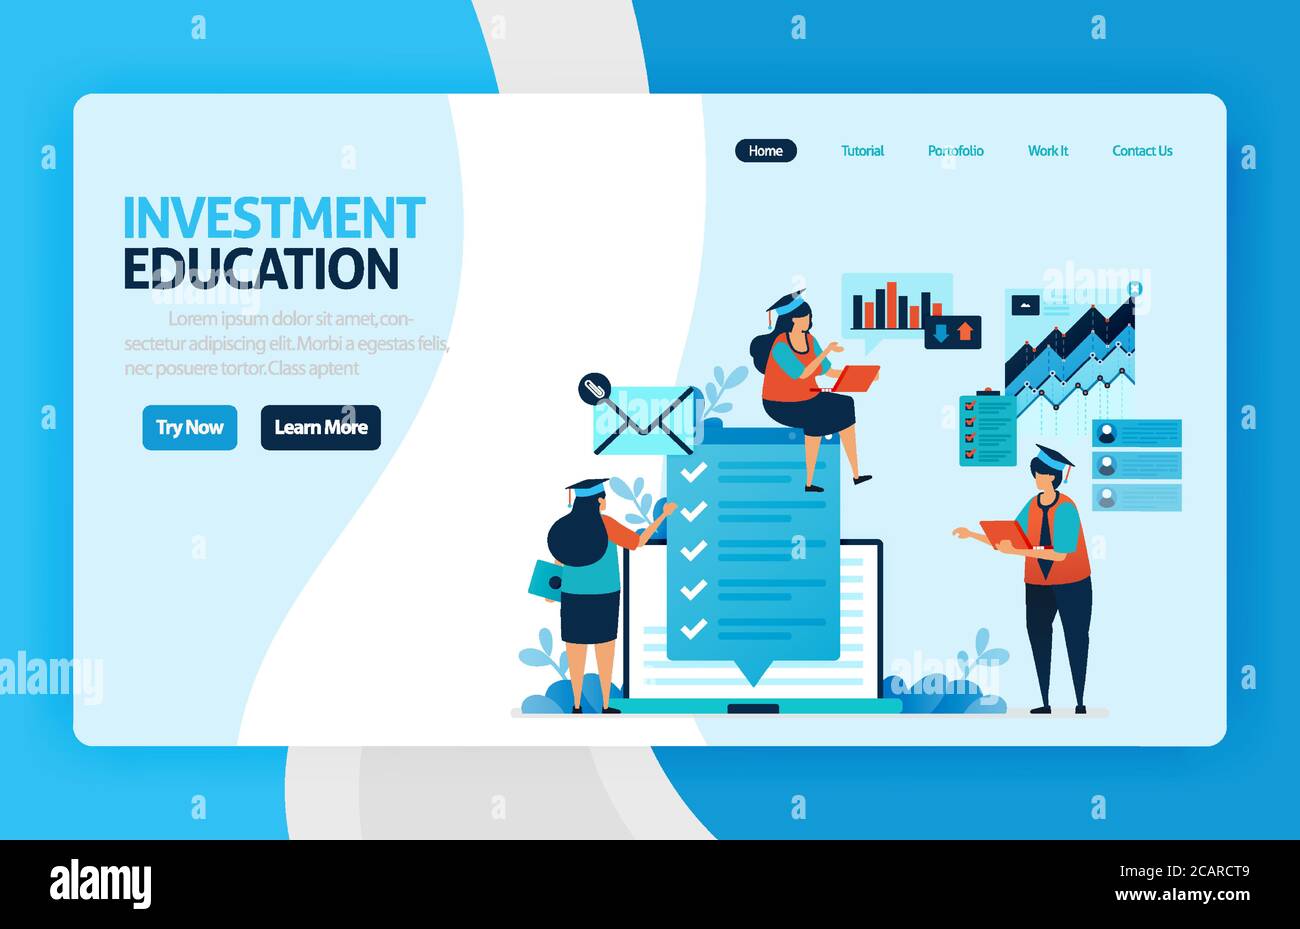 Landing Page Vektor-Design für Investitionen Ausbildung. Return of Investment mit Planung, Börse und Investmentfonds, Fixed Income, Geldmarkt. Fo Stock Vektor